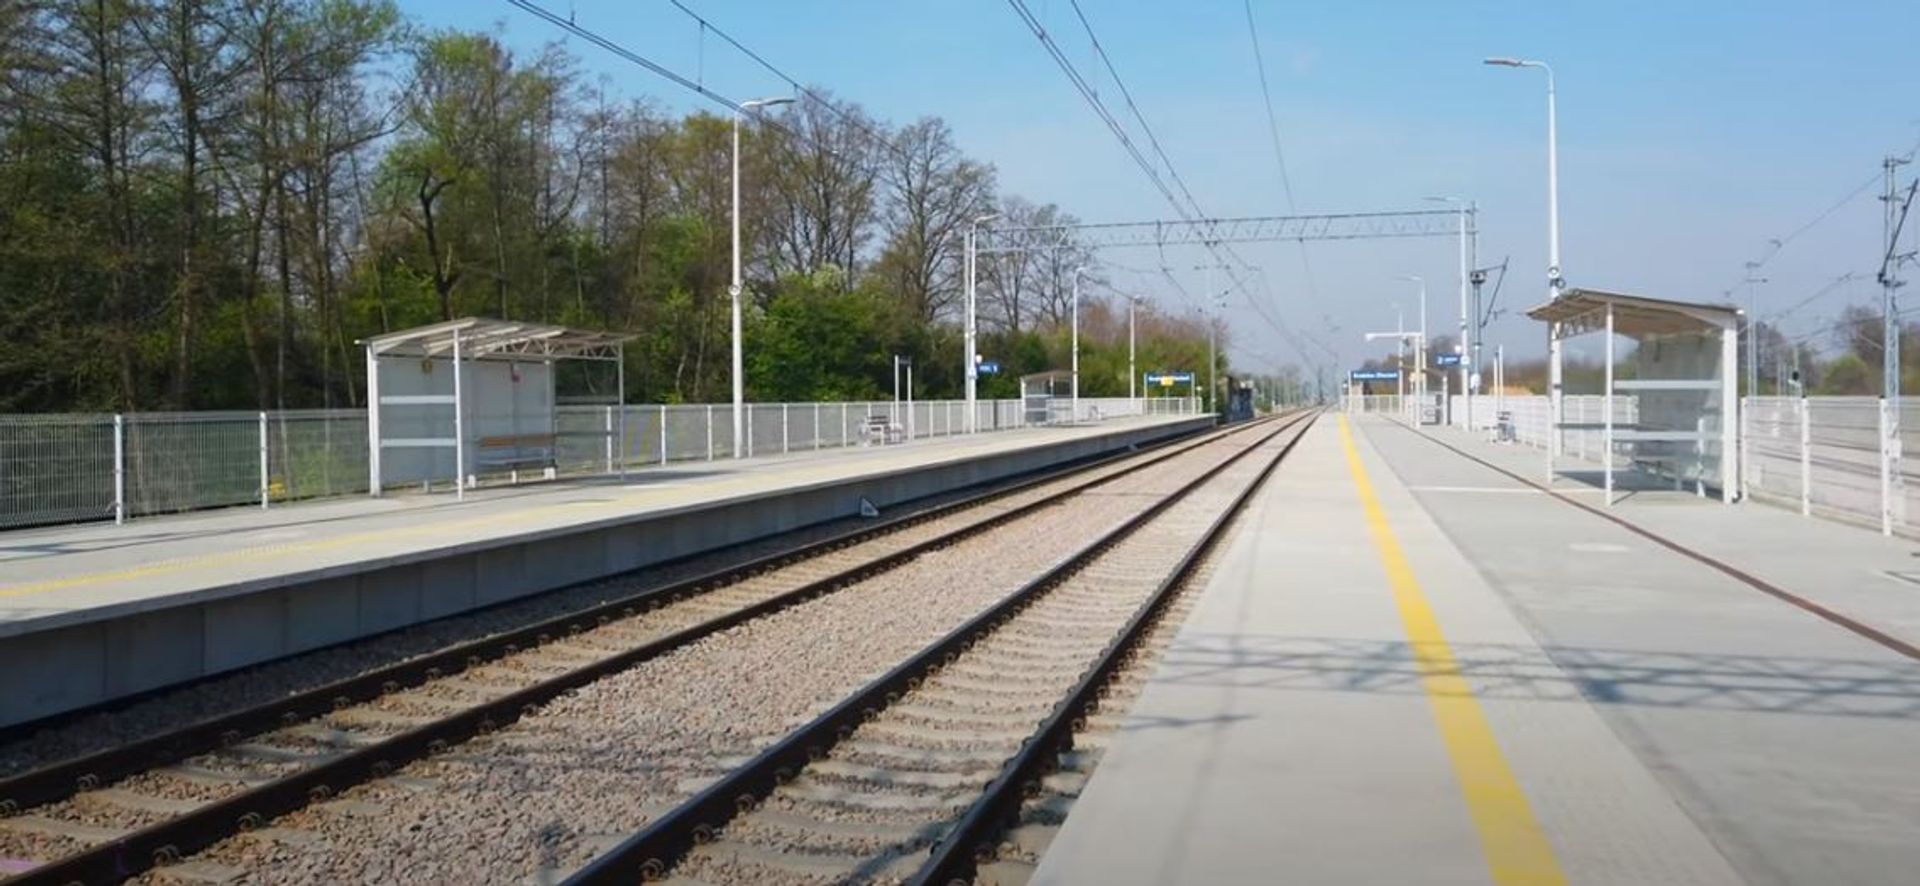 W Krakowie powstaje nowy przystanek kolejowy Złocień 